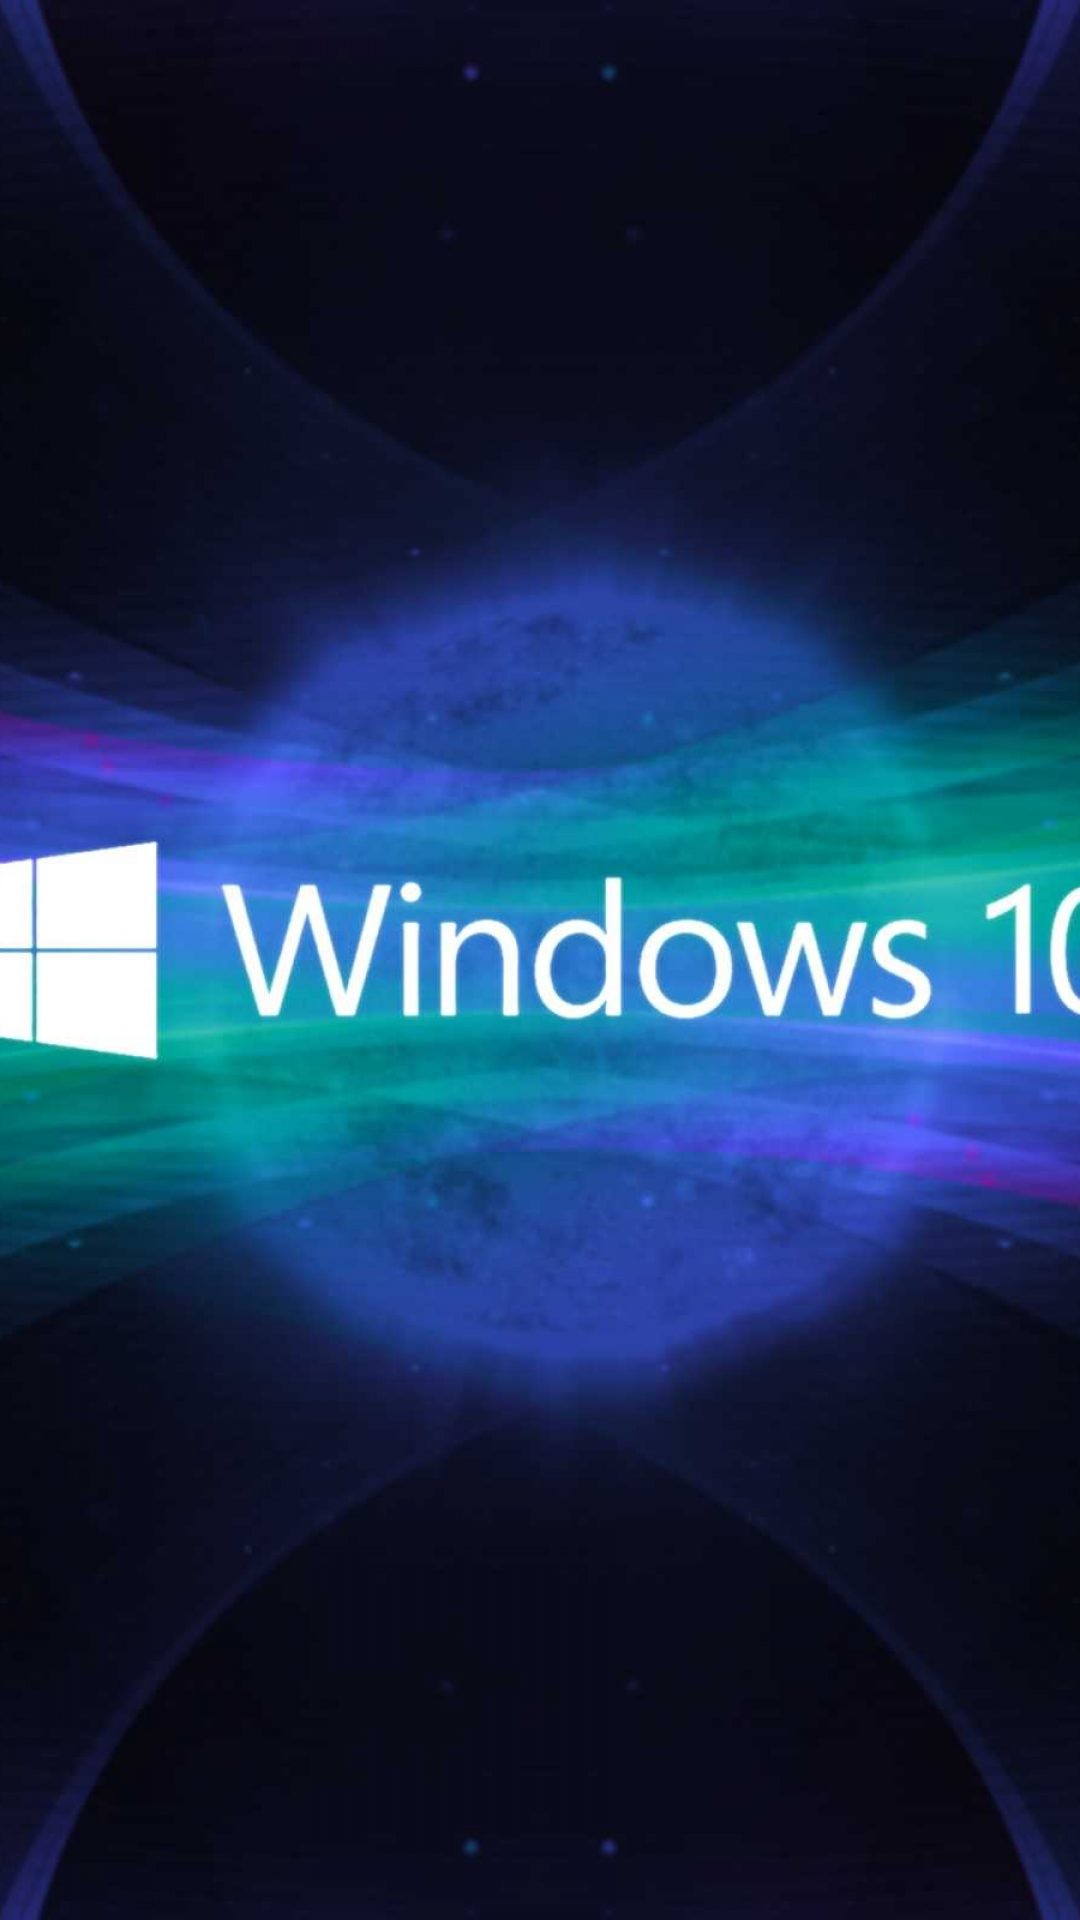 1080x1920 windows 10 wallpaper hd 3d for desktop